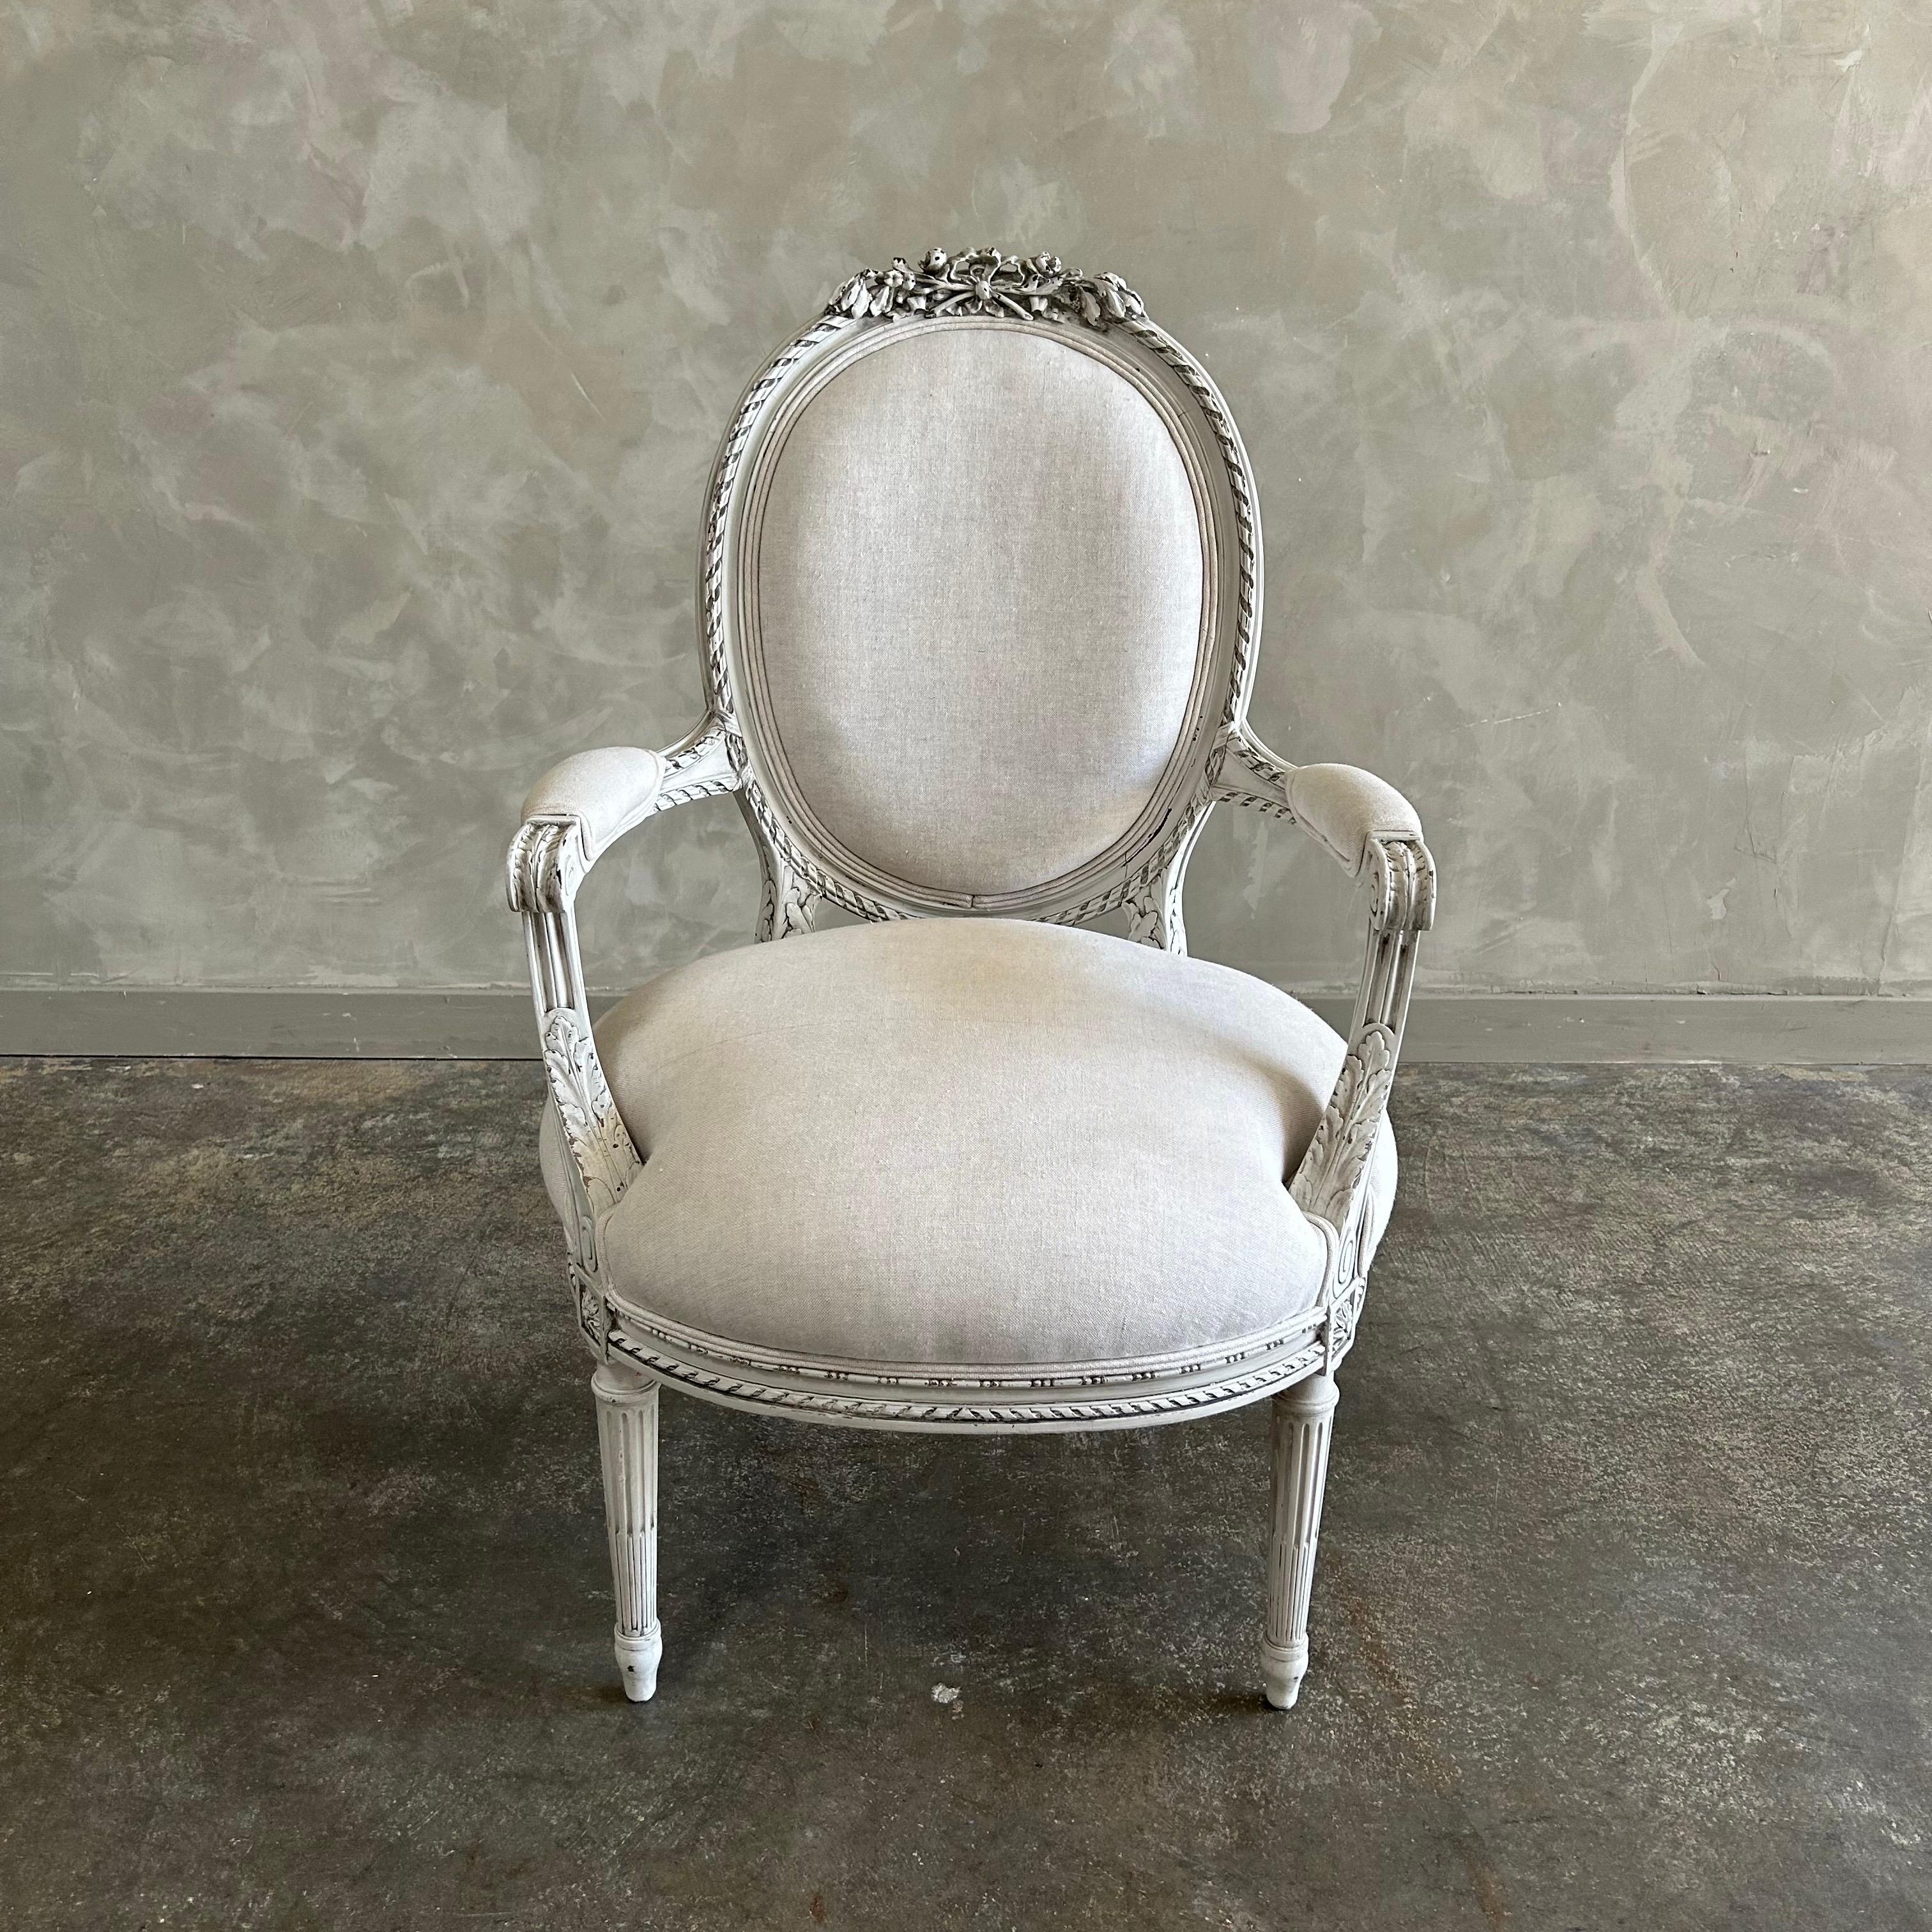 Chaise ancienne de style Louis XVI, peinte en blanc d'huître avec des bords subtilement abîmés, patinée à l'ancienne. Assise et dossier rembourrés dans un luxueux lin naturel, solide et robuste, prêt pour un usage quotidien. 
Dimensions : 24 